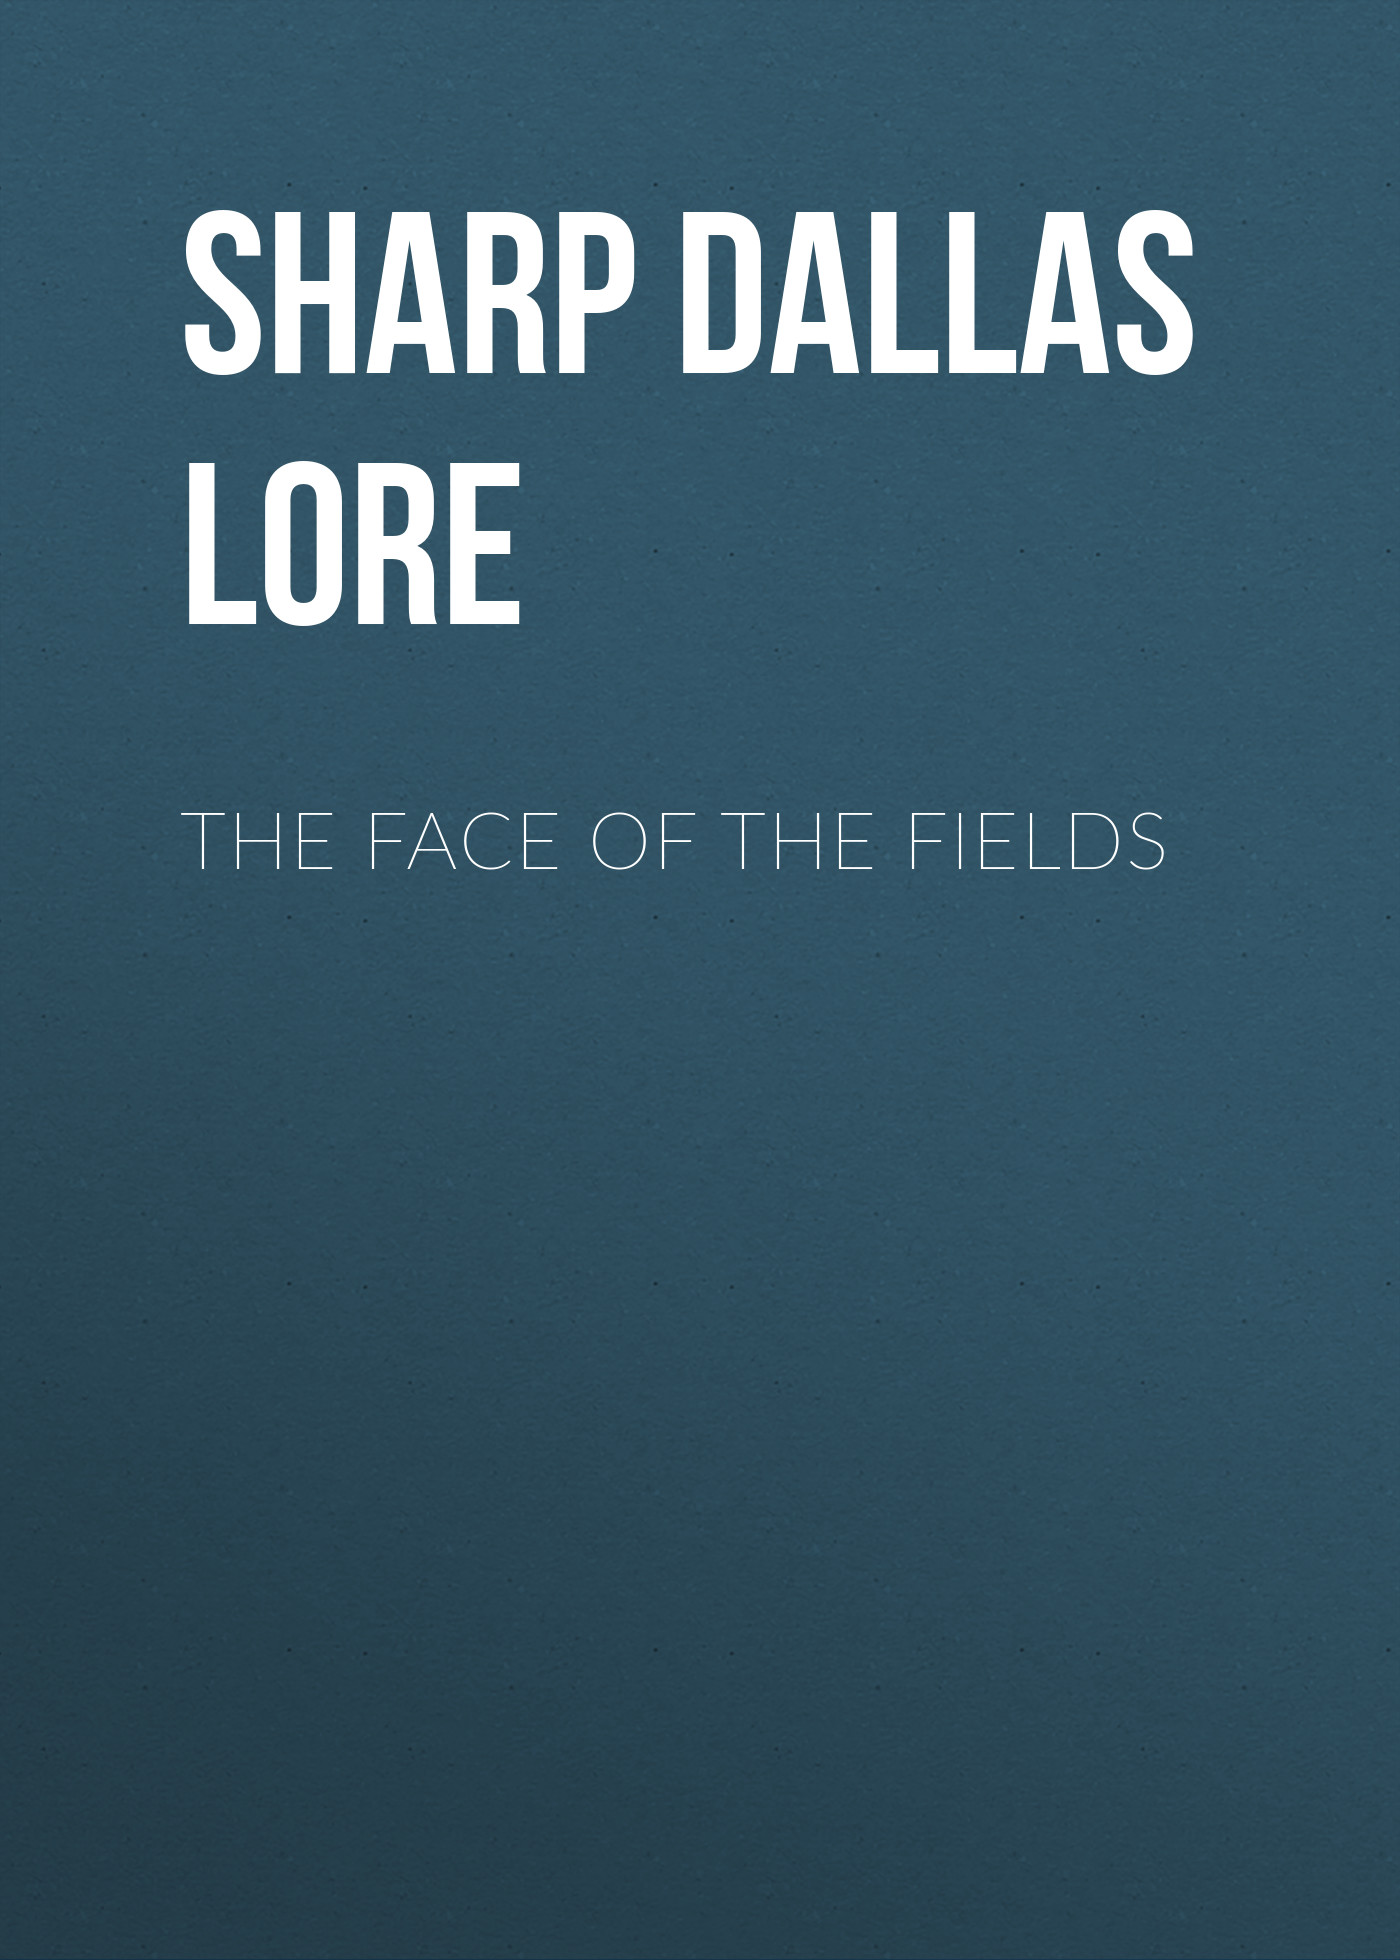 Книга The Face of the Fields из серии , созданная Dallas Sharp, может относится к жанру Природа и животные, Зарубежная старинная литература, Зарубежная классика. Стоимость книги The Face of the Fields  с идентификатором 25570159 составляет 0 руб.